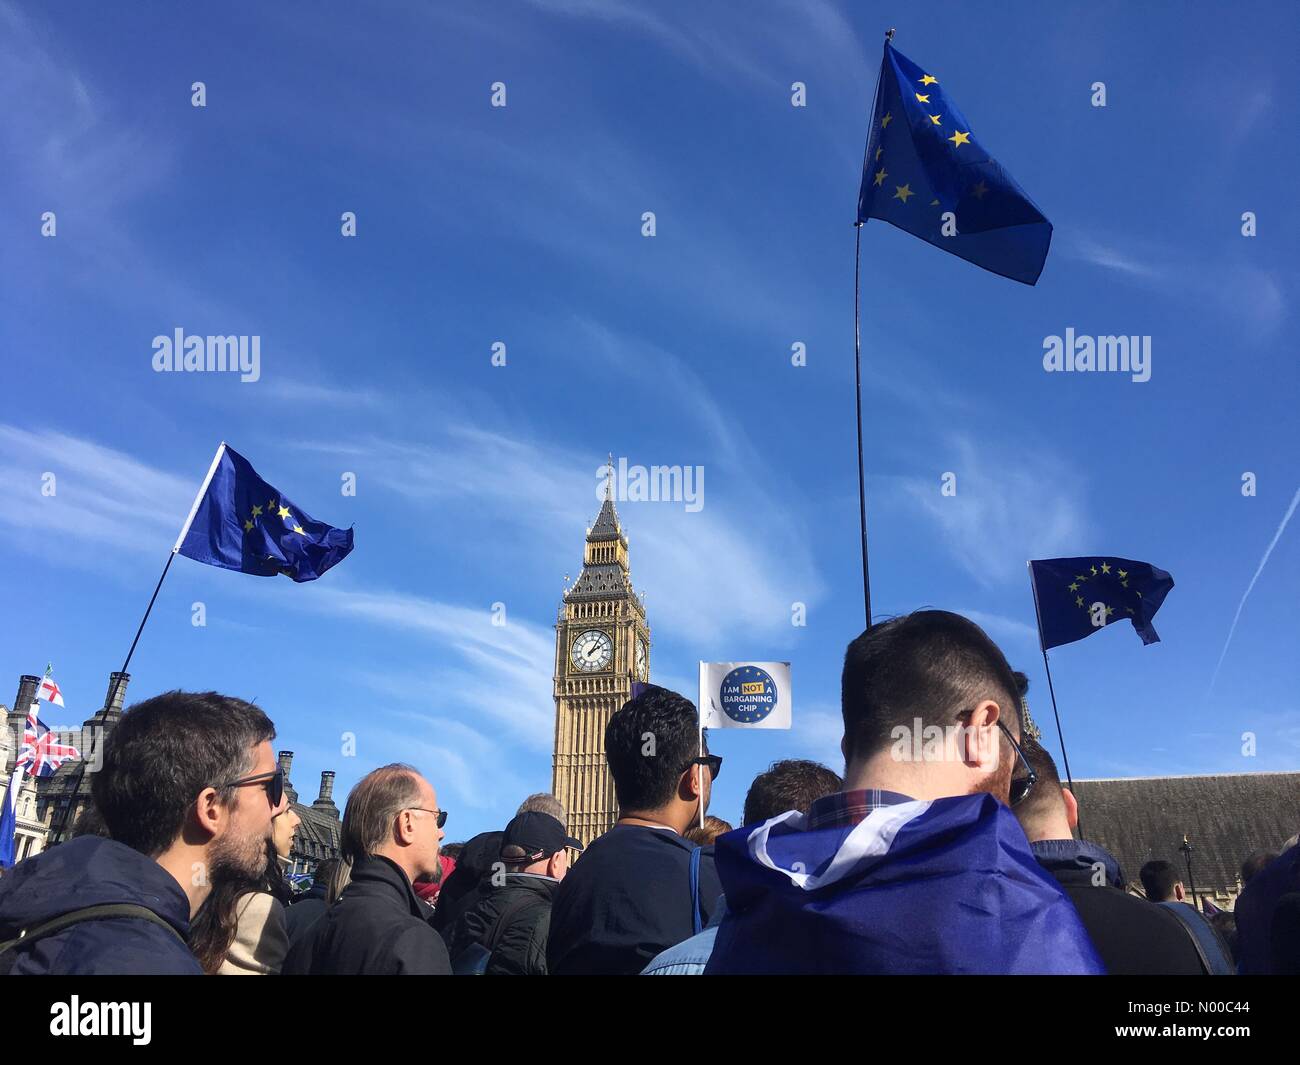 Londra, Regno Unito. 25 Mar, 2017. 25/03/2017 Londra UK anti Brexit demo prendendo posto nel centro di Londra Credito: Emin Ozkan / StockimoNews/Alamy Live News Foto Stock